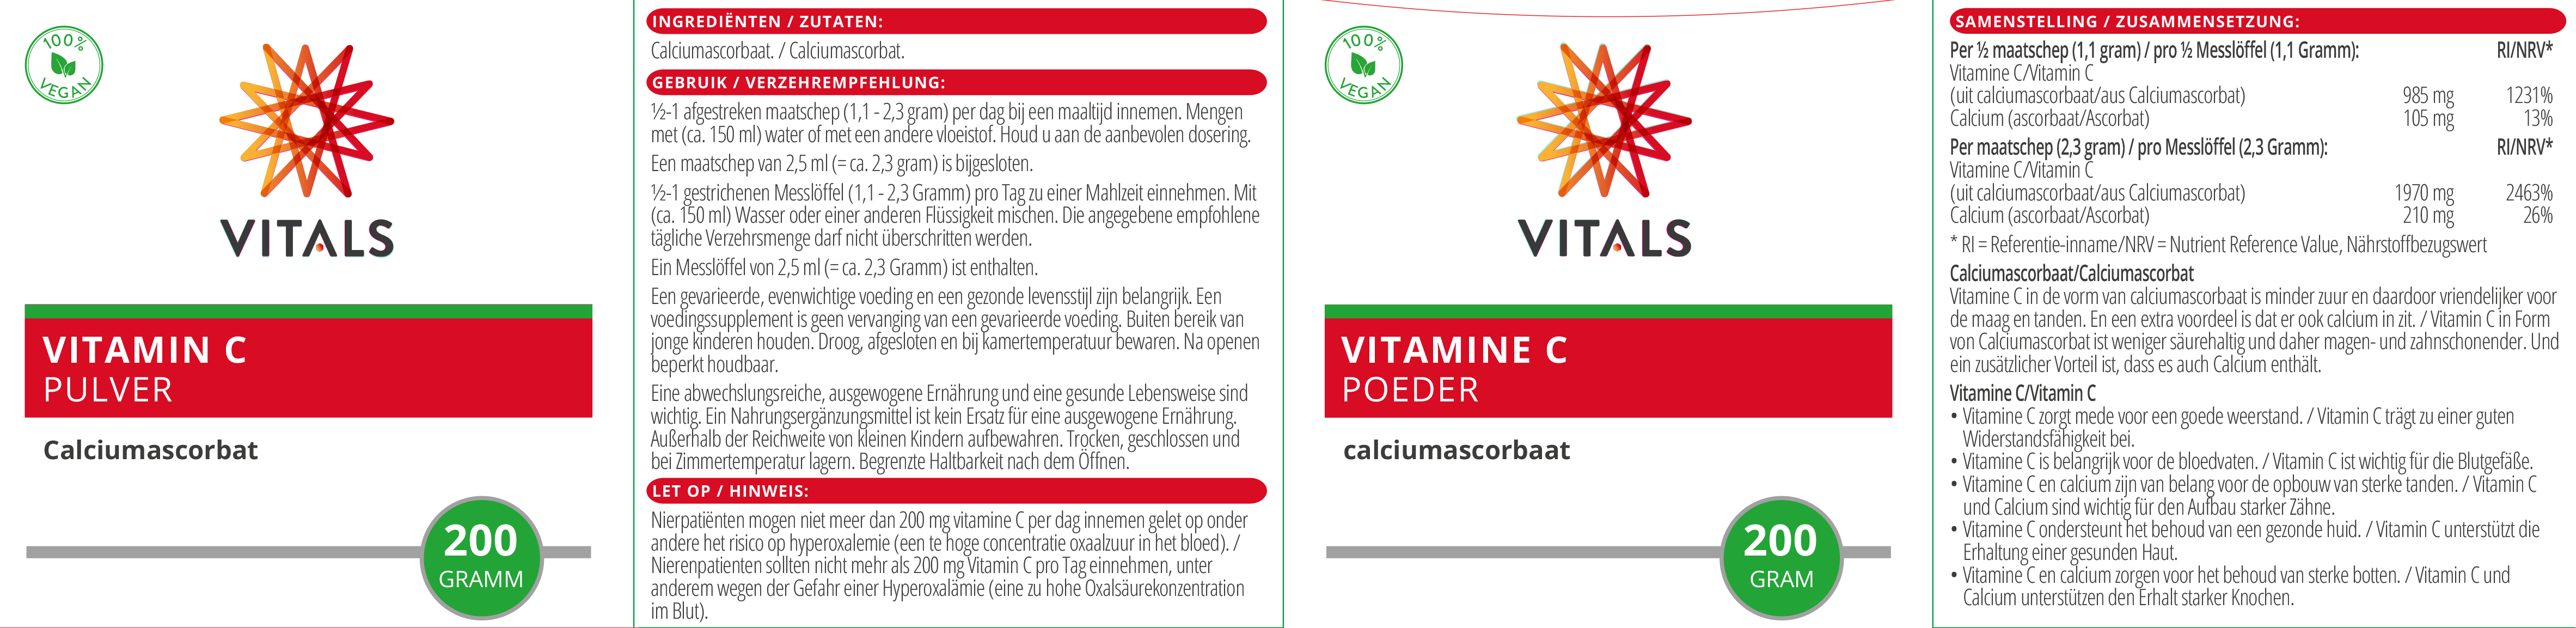 Vitamin C Pulver (Calciumascorbat)